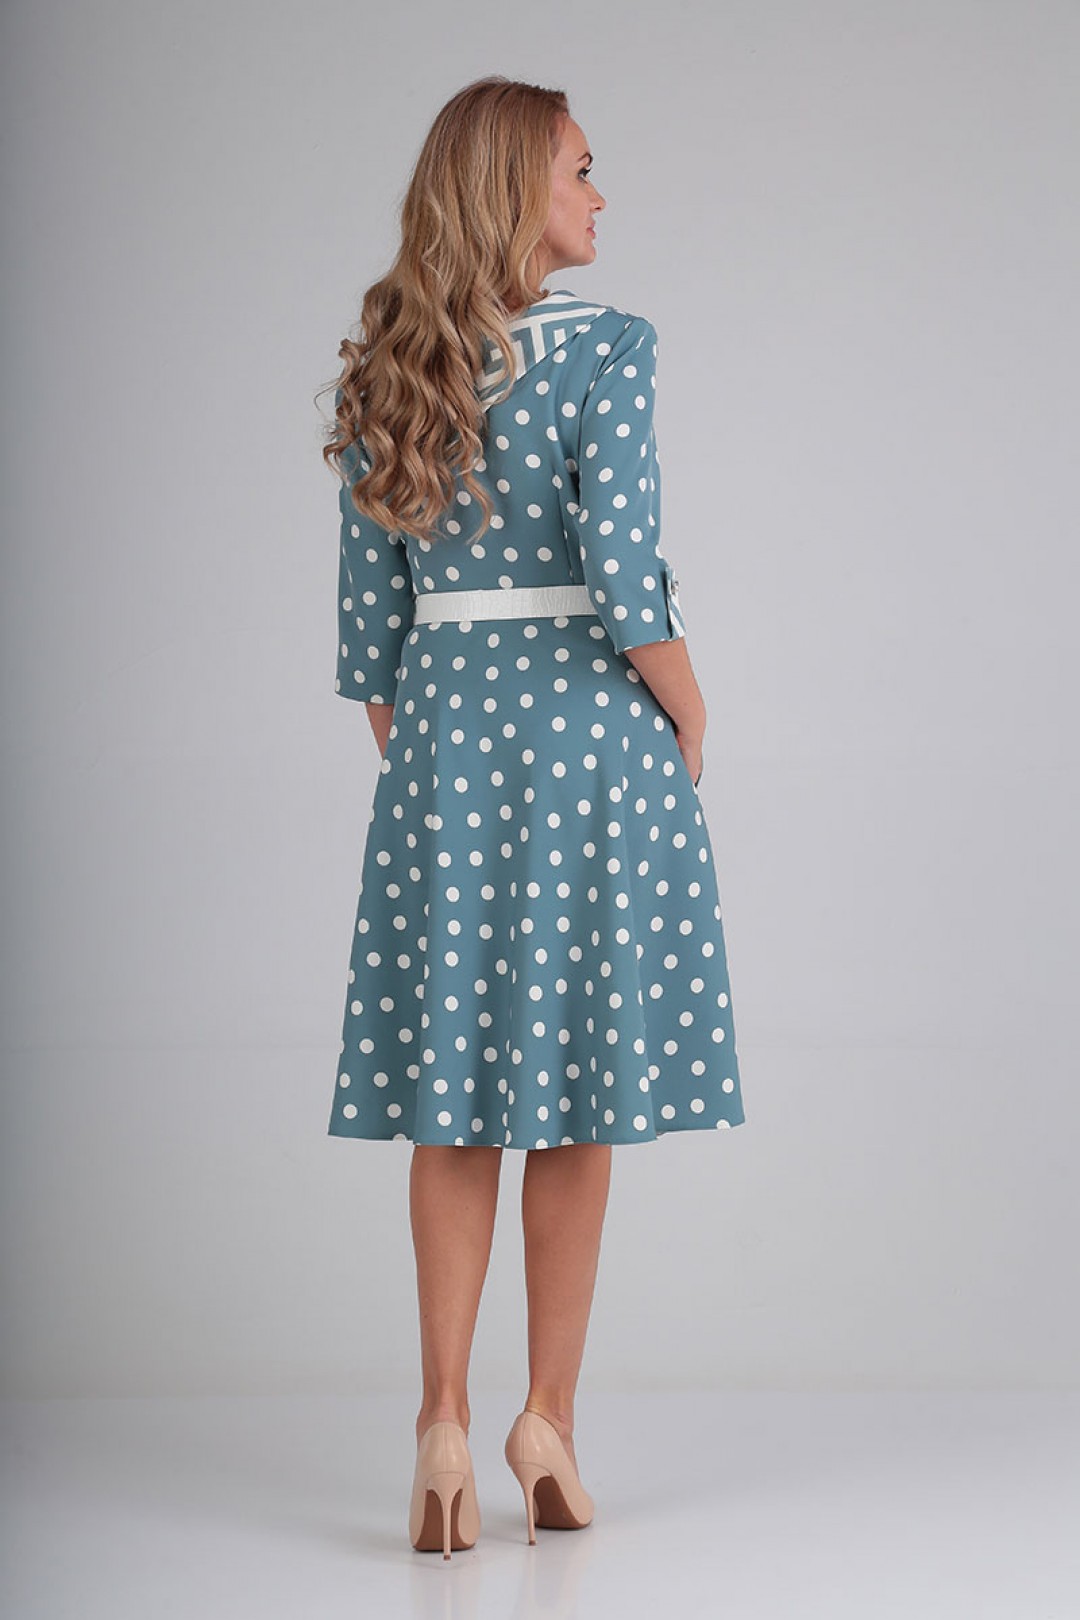 Платье Мода-Версаль 2181 голубой горох